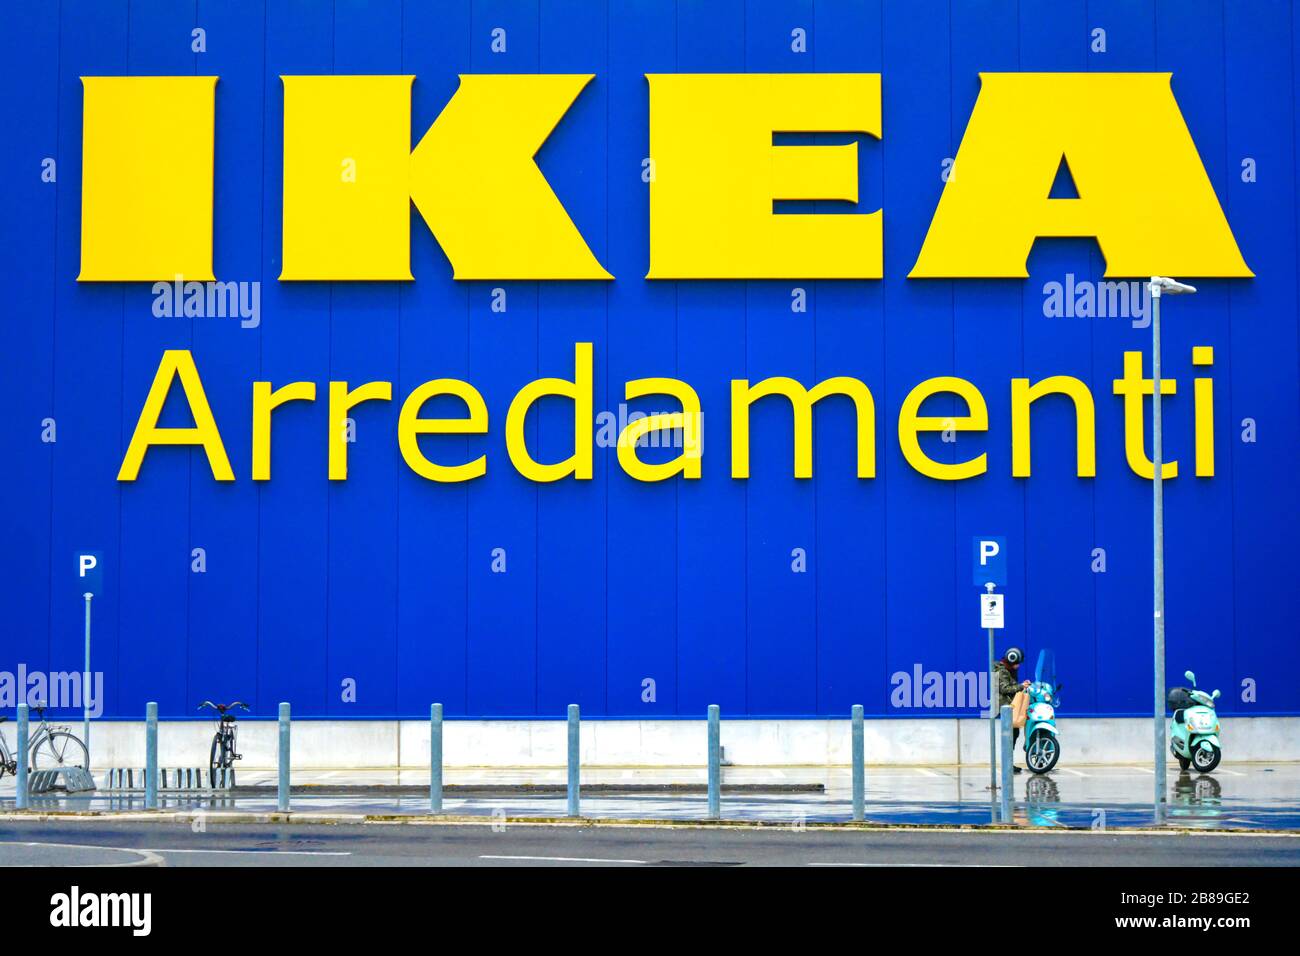 Nahaufnahme eines Ikea-Zeichens. Berühmte schwedische Möbelhauskette. Eine Frau einige Motorräder und Fahrräder vor dem Hotel geparkt. Schild bedeutet "Möbel" Stockfoto